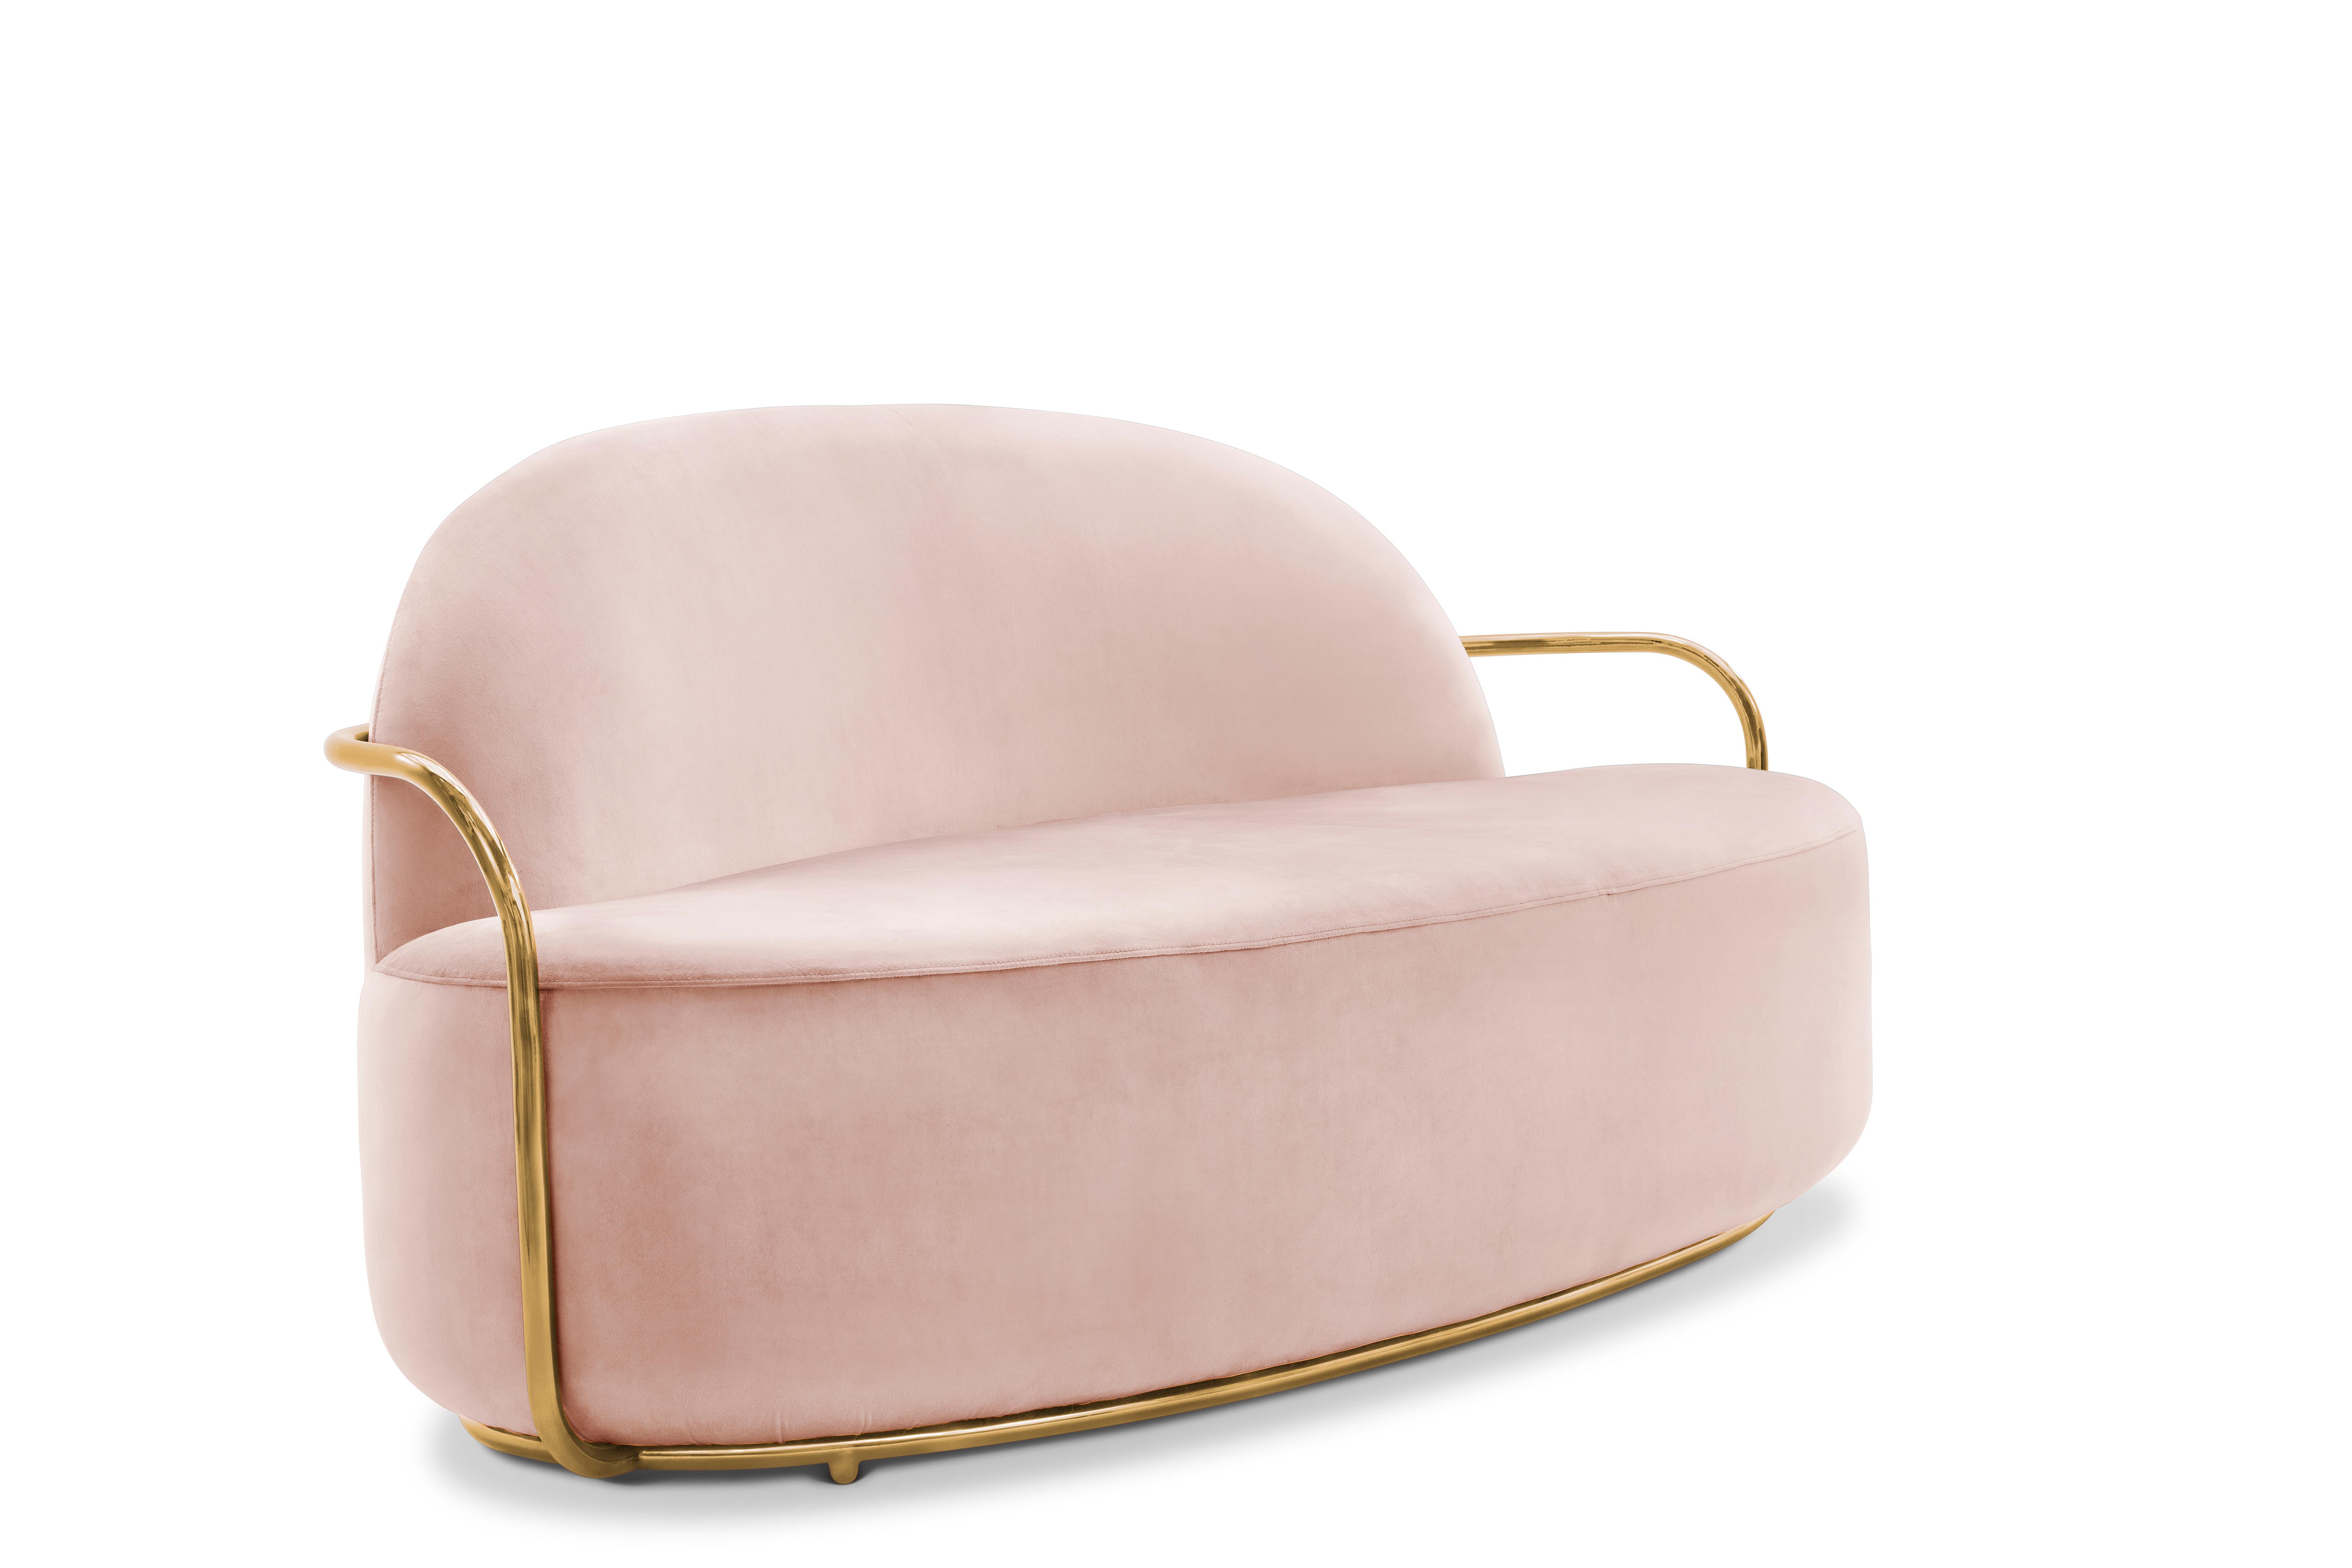 Das Orion 3-Sitzer-Sofa mit plüschigem rosa Samt und goldenen Armlehnen von Nika Zupanc ist ein hübsches Bild aus blassrosa Samt und goldfarbenen Metallarmen.

Nika Zupanc, eine auffallend renommierte slowenische Designerin, scheut sich nicht davor,